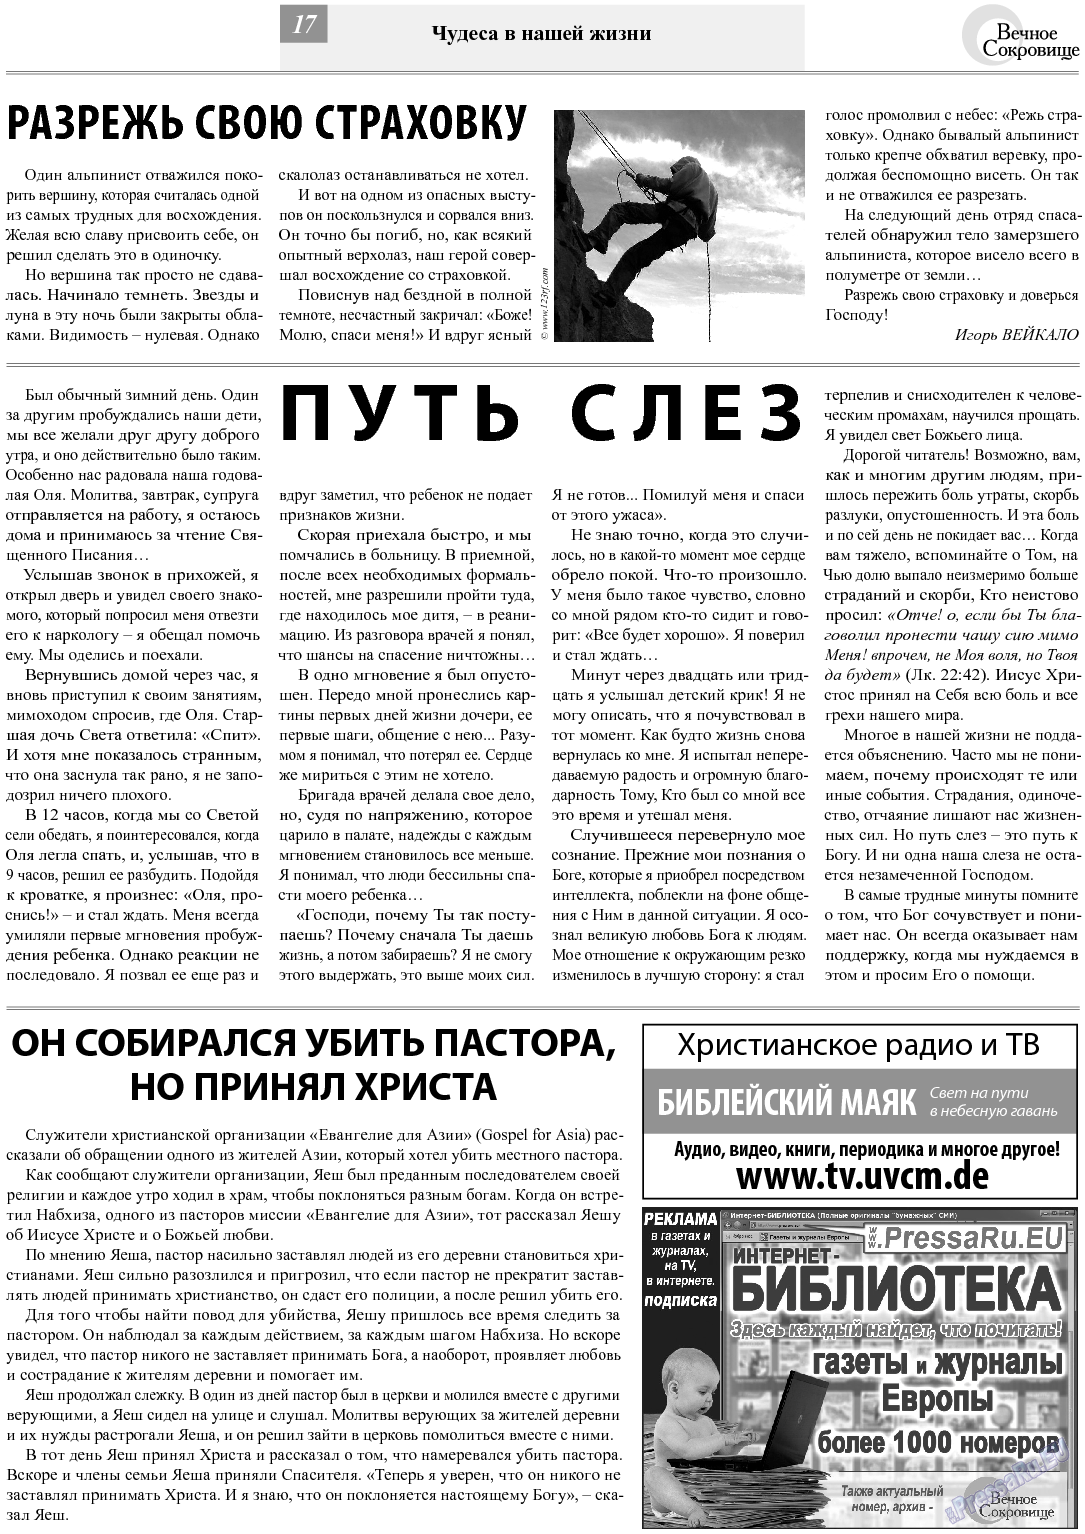 Вечное сокровище, газета. 2013 №5 стр.17